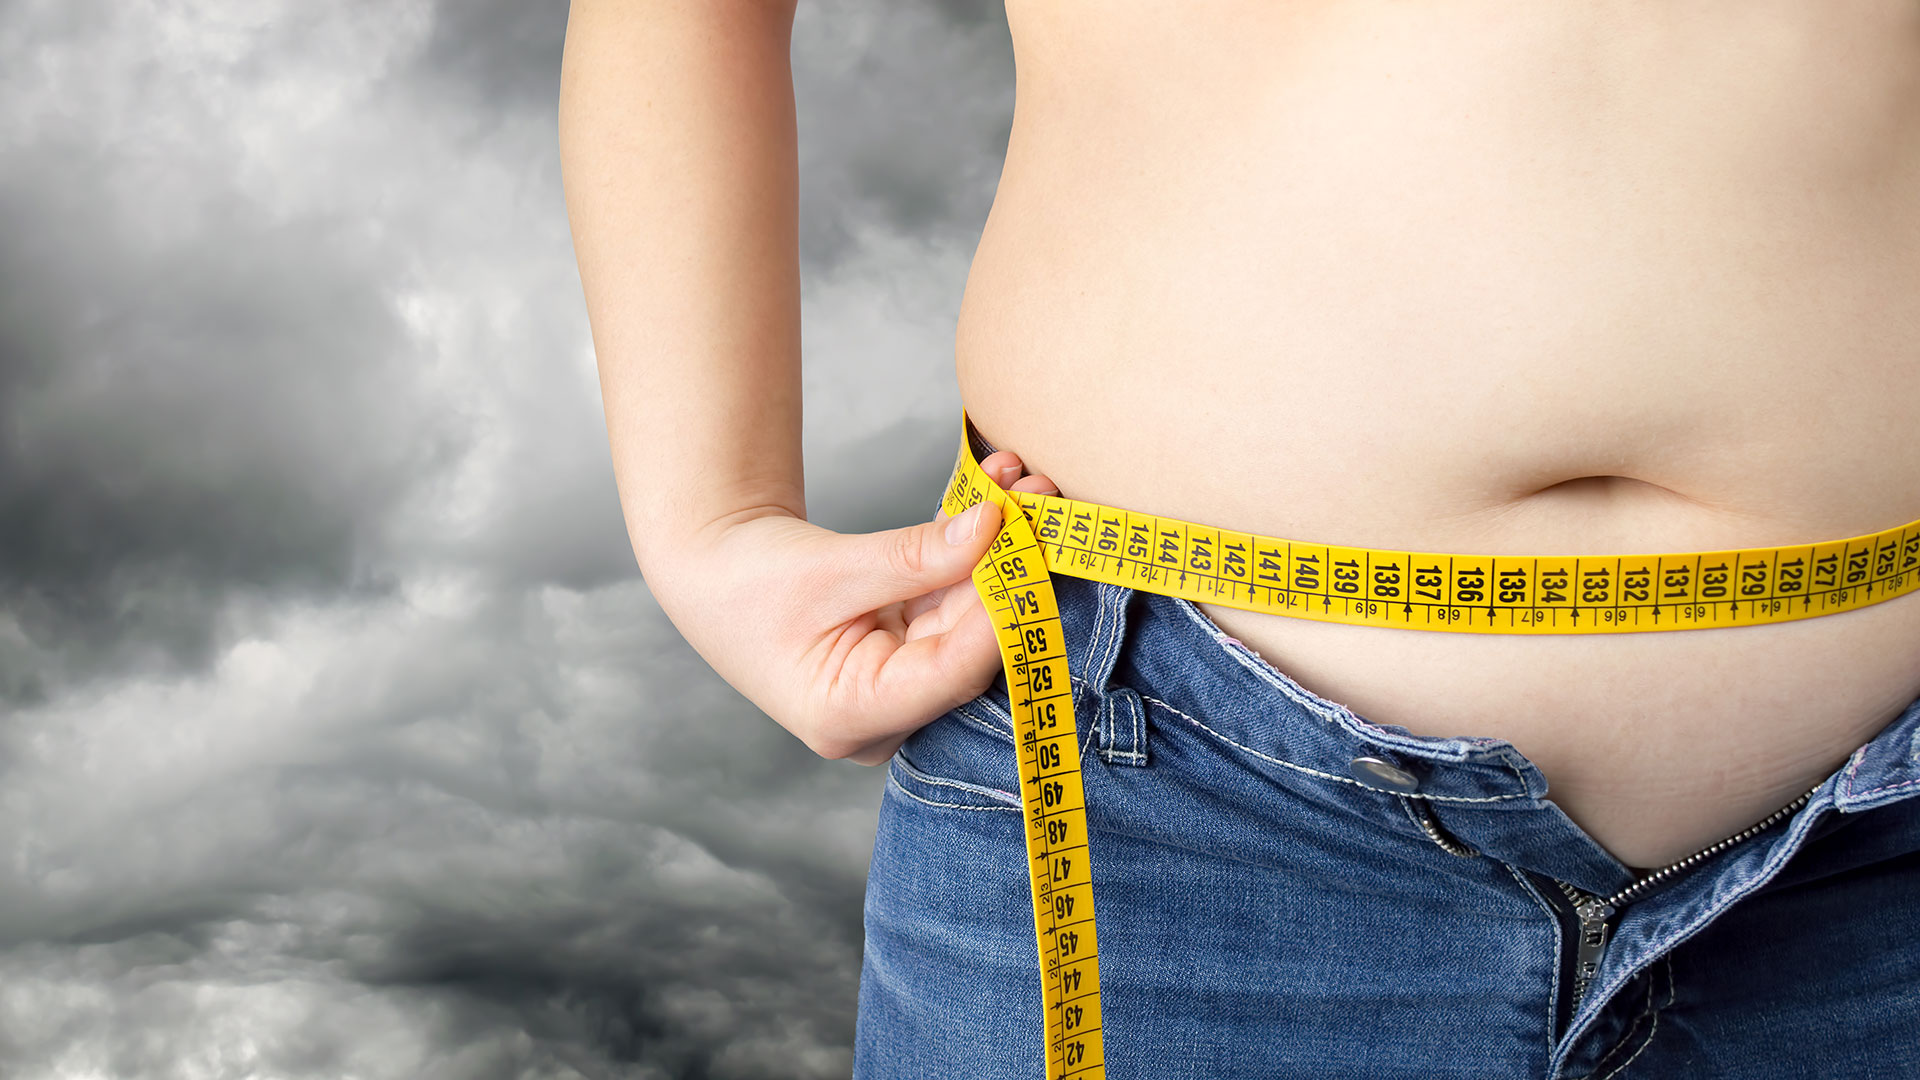 El sobrepeso y la obesidad son factores de riesgo de diabetes en las diferentes edades de la vida humana(Getty)